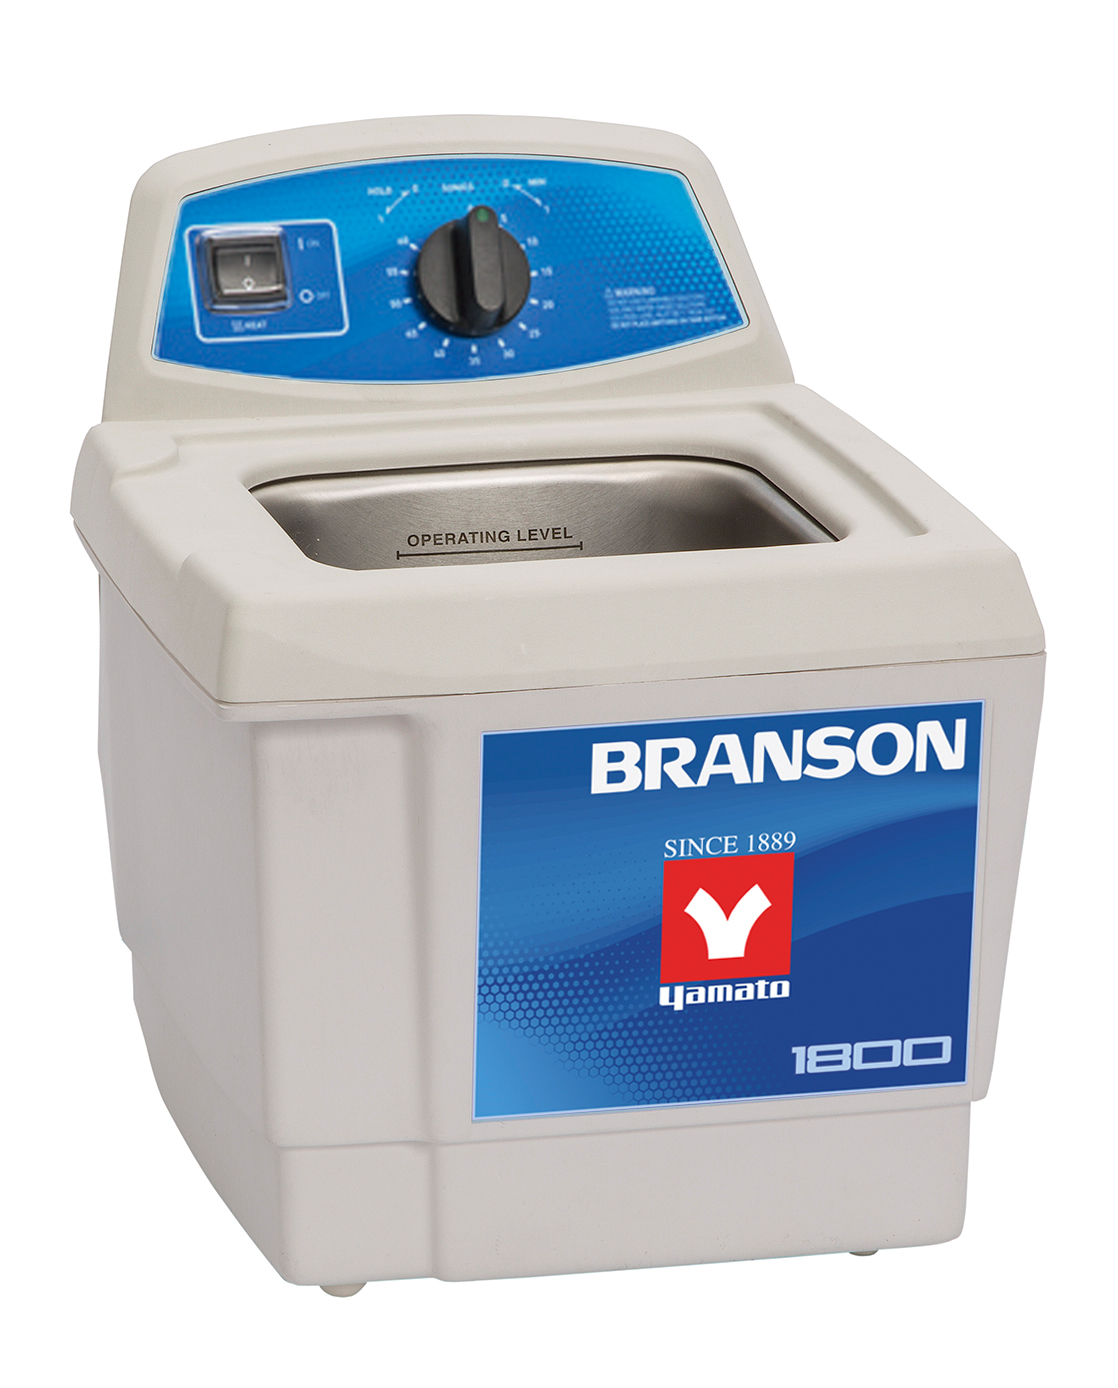 13周年記念イベントが ヤマト科学 BRANSON ブランソン 超音波洗浄器 Bransonic CPX5800-J